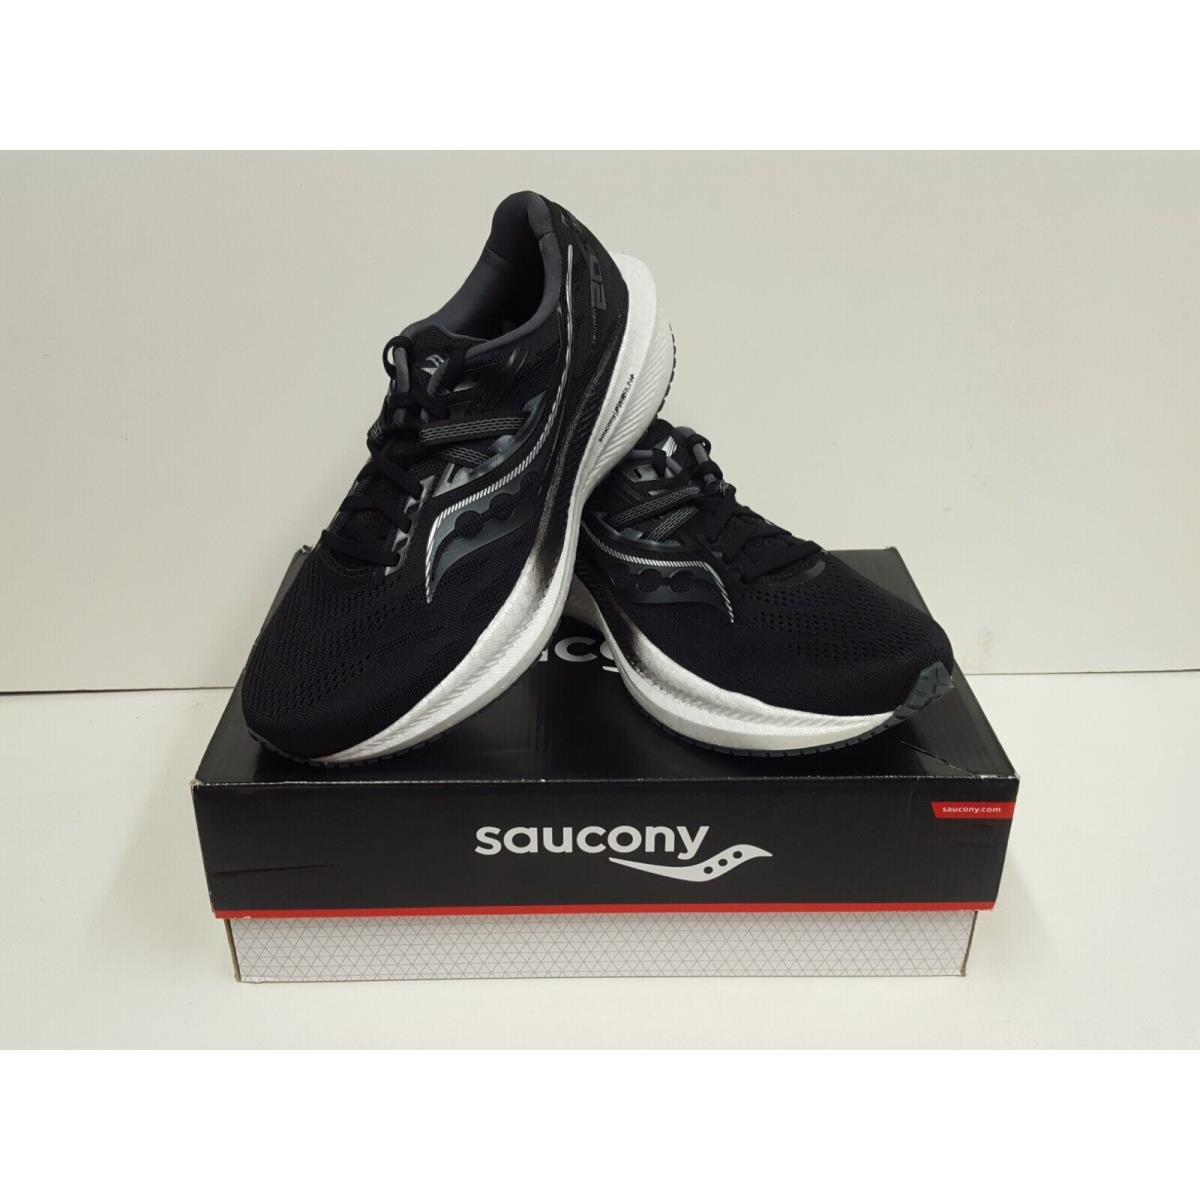 Saucony shoes Triumph 11